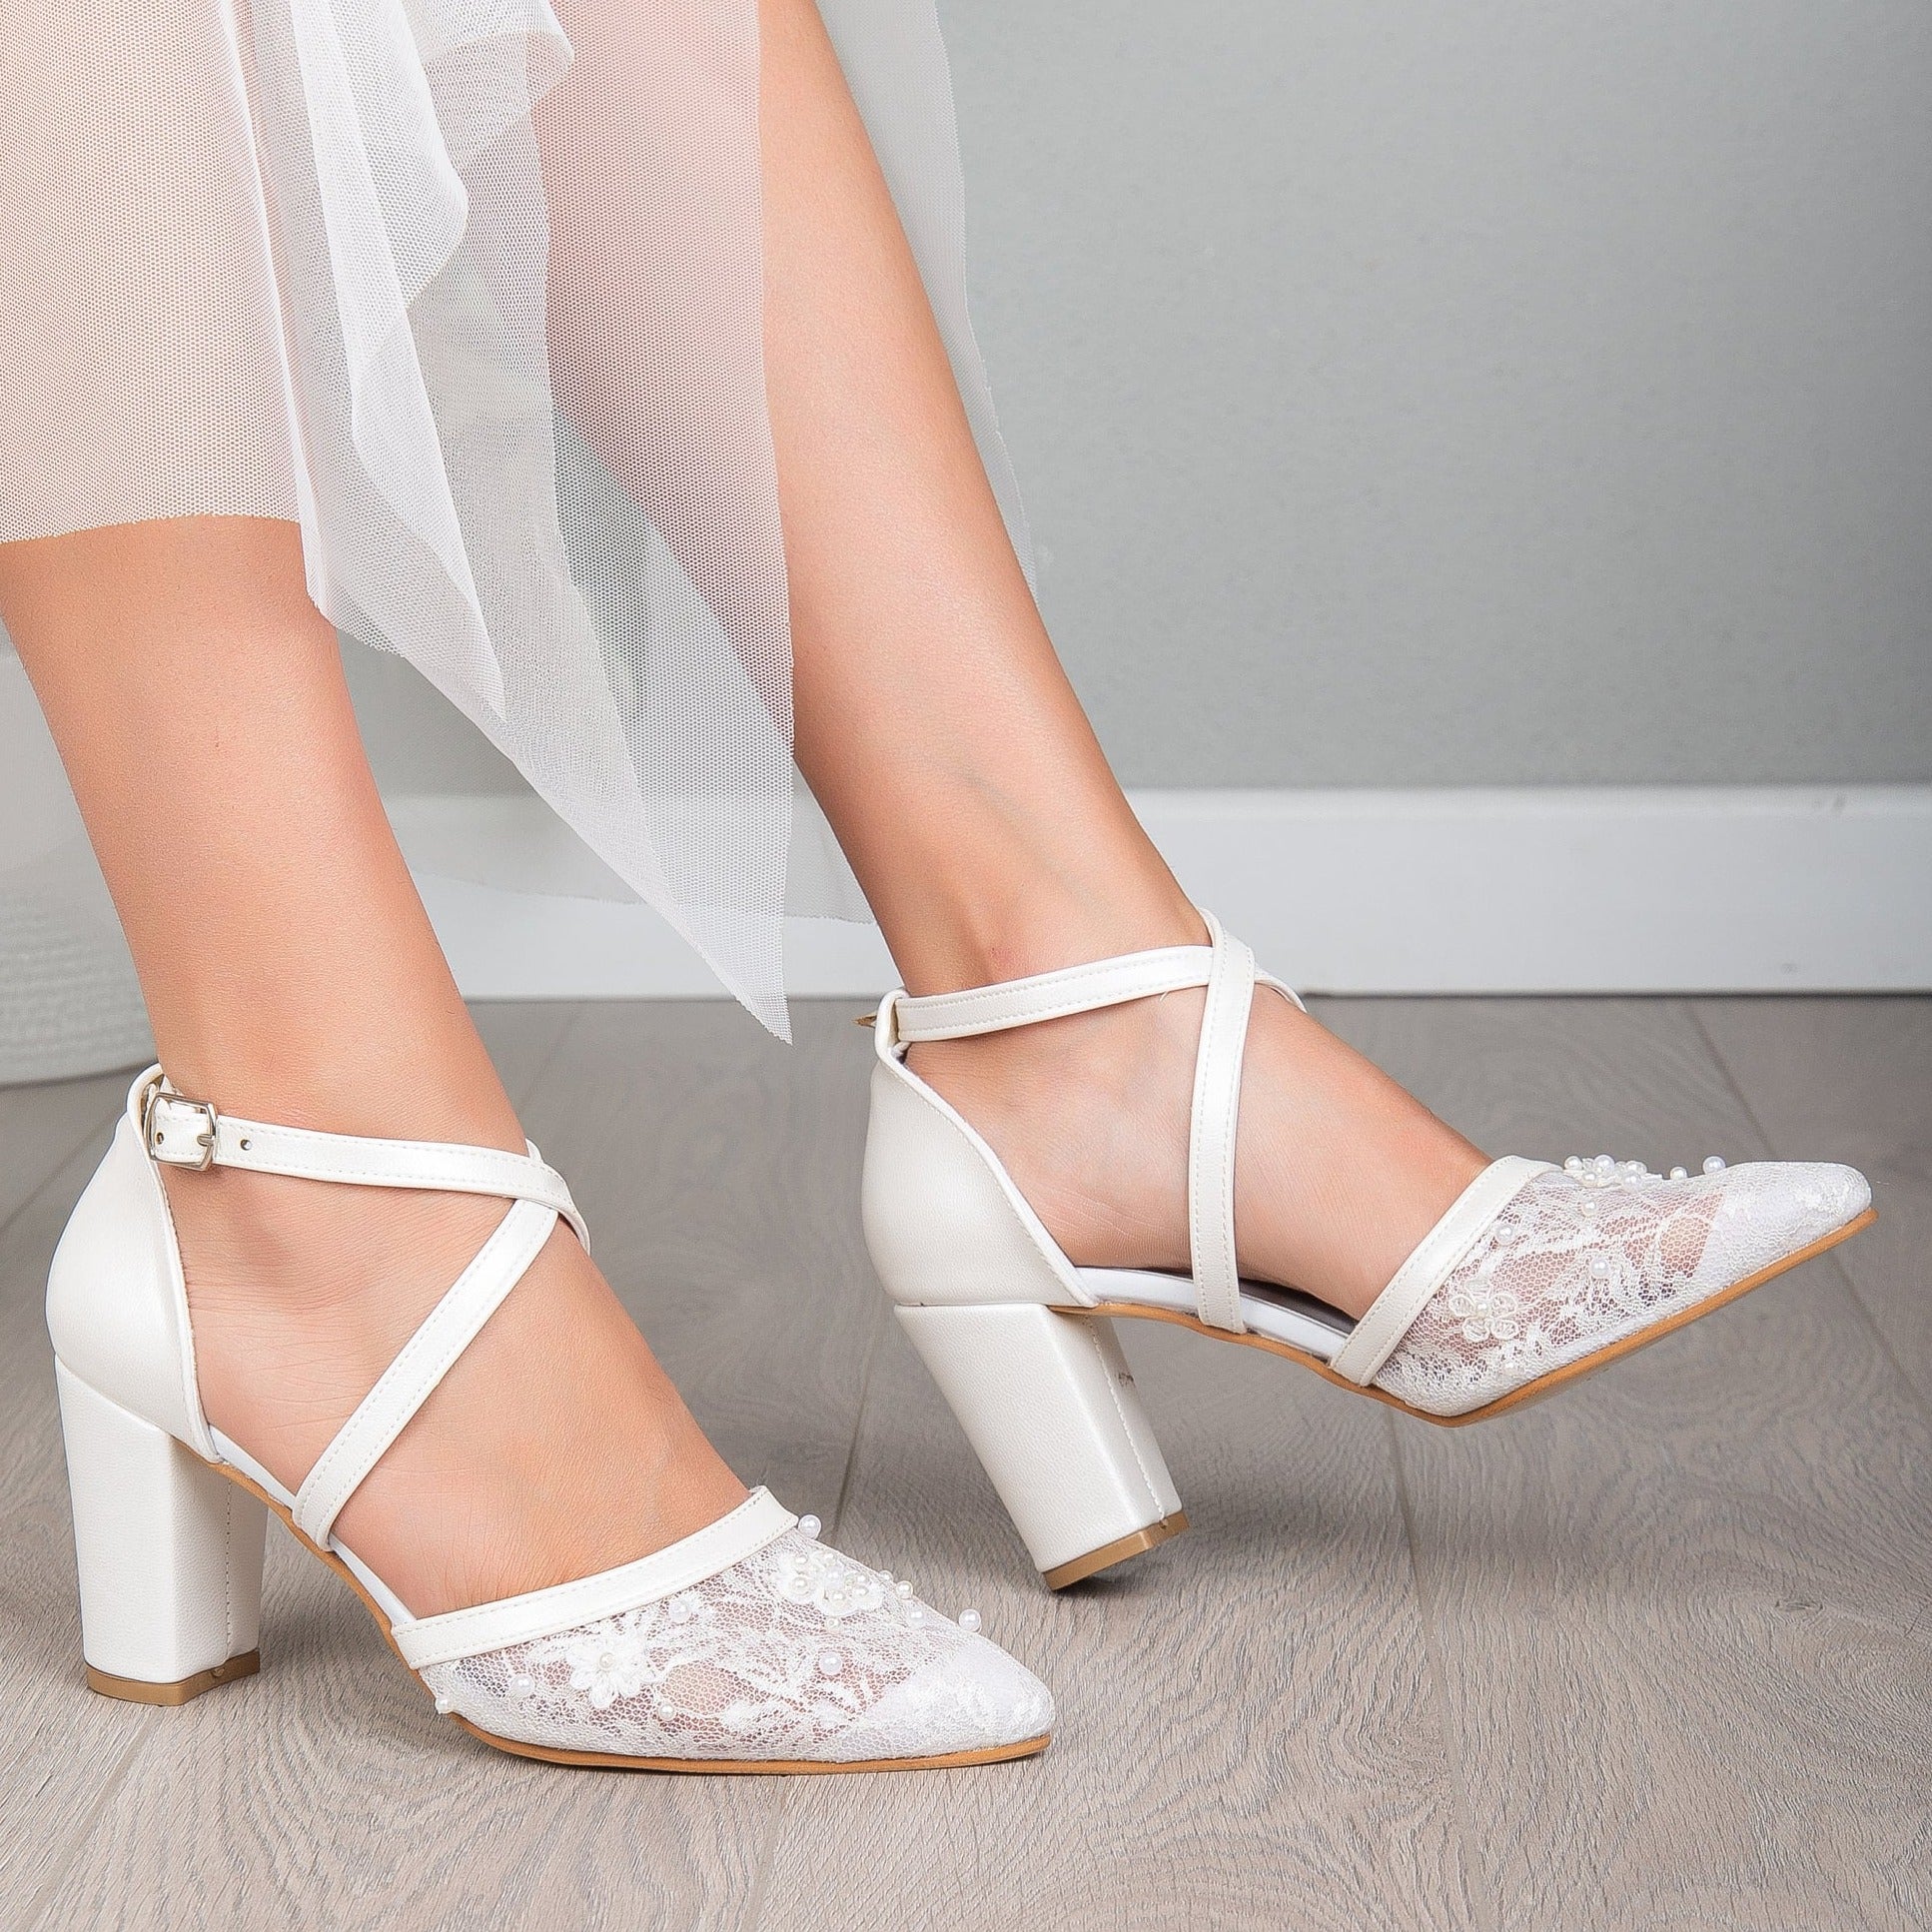 Buy White Rhinestone Classy Wedding Shoes, Elegant Pointed Toe Bridal Heels,  Wedding Heels Crystal Simple, Art Deco Block Heels Wedding Shoes Online in  India - Etsy